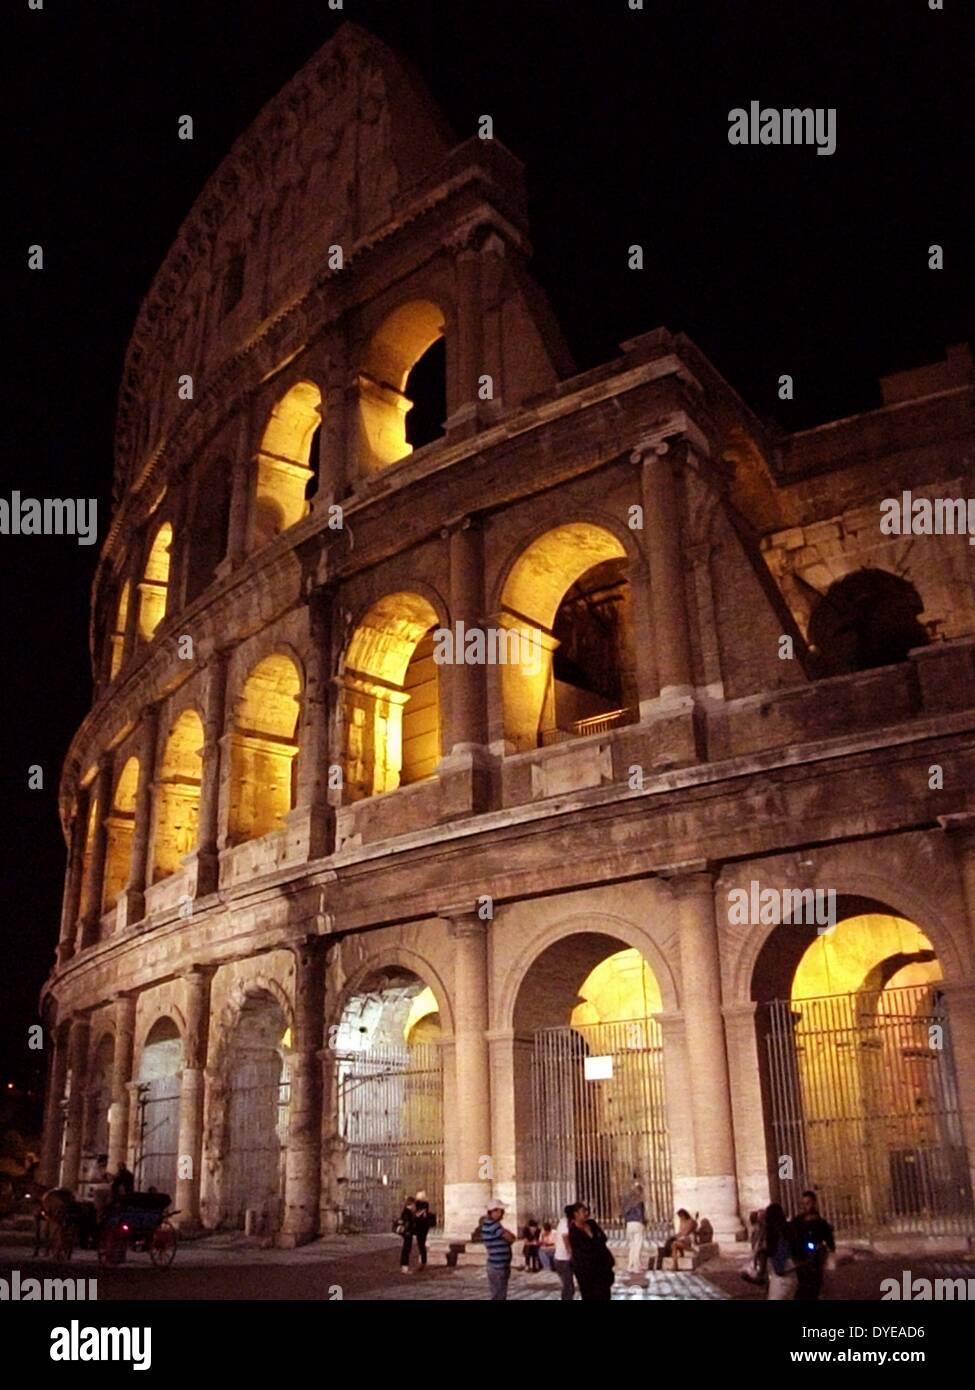 Tempo di notte vista del Colosseo, un anfiteatro ellittico nel centro della città di Roma. Costruito 70-80 annuncio. Roma. Italia 2013 Foto Stock